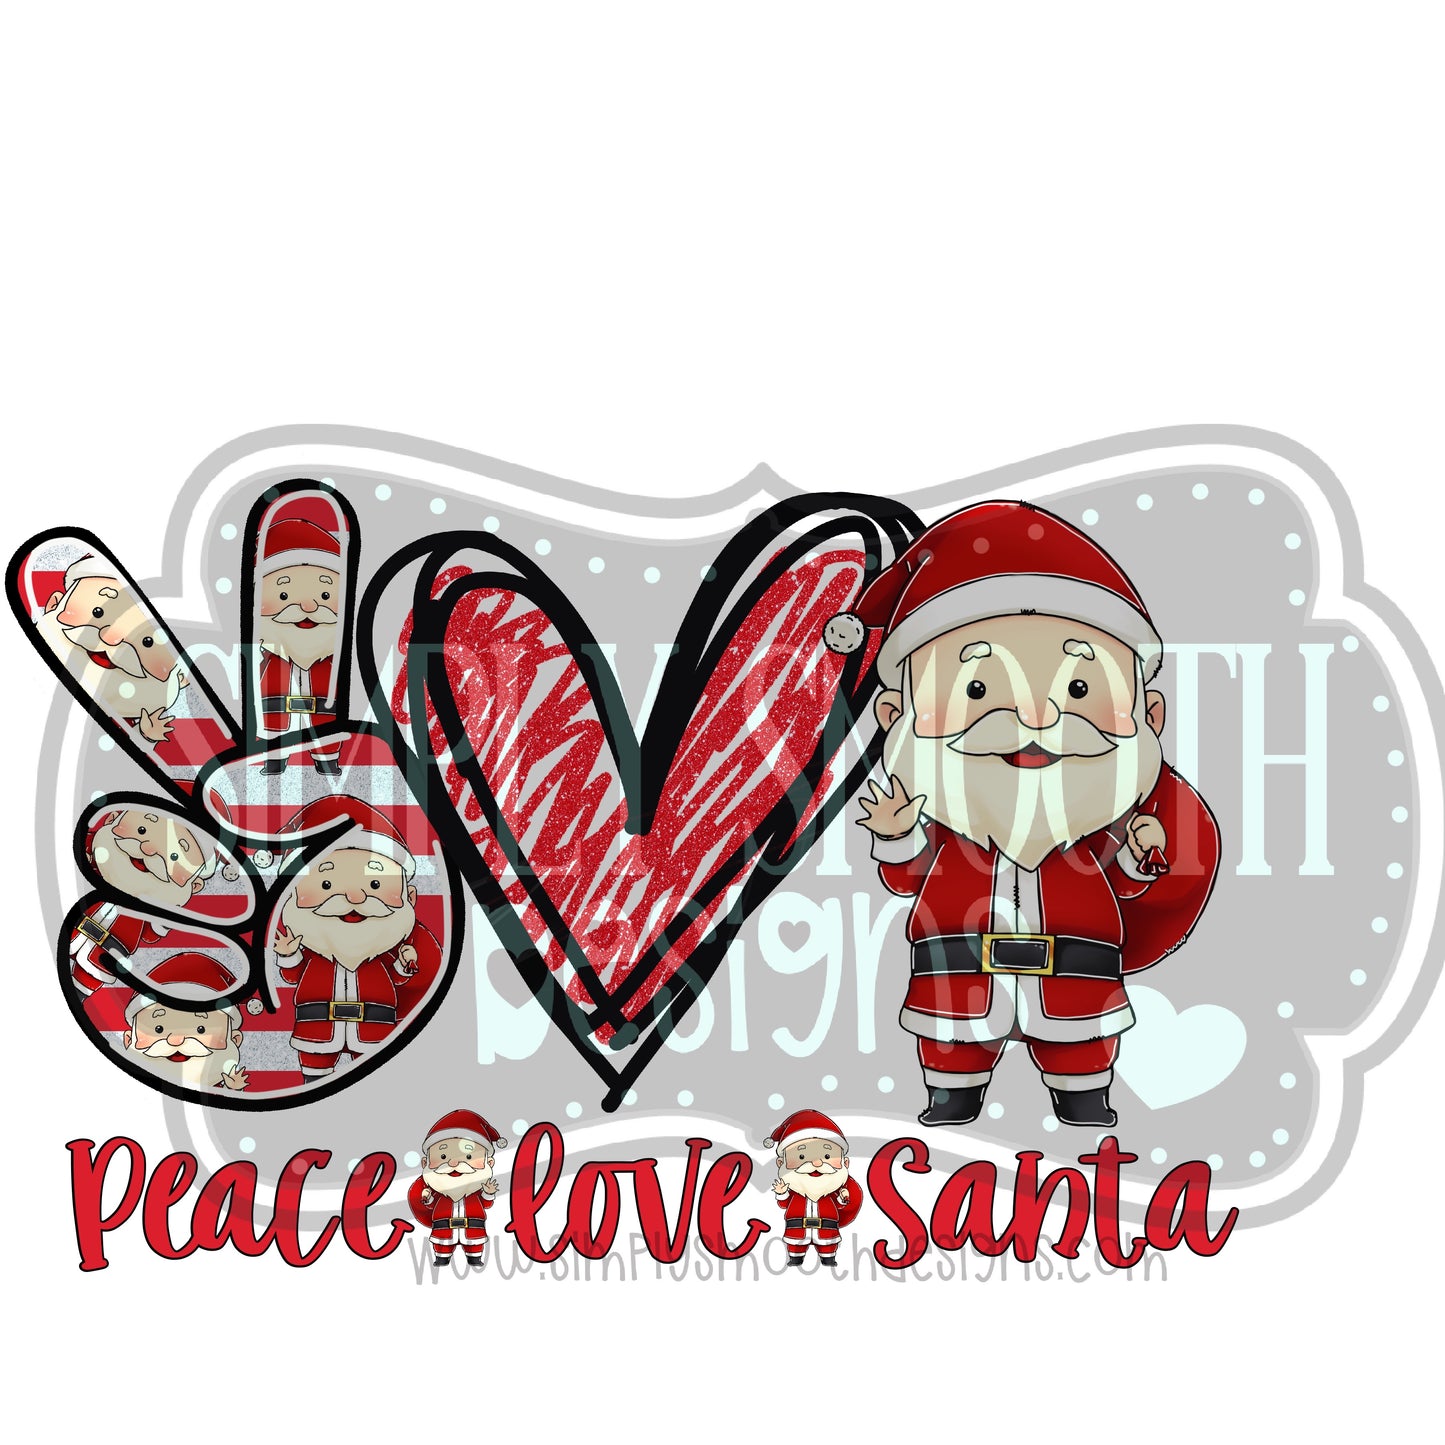 Peace love santa